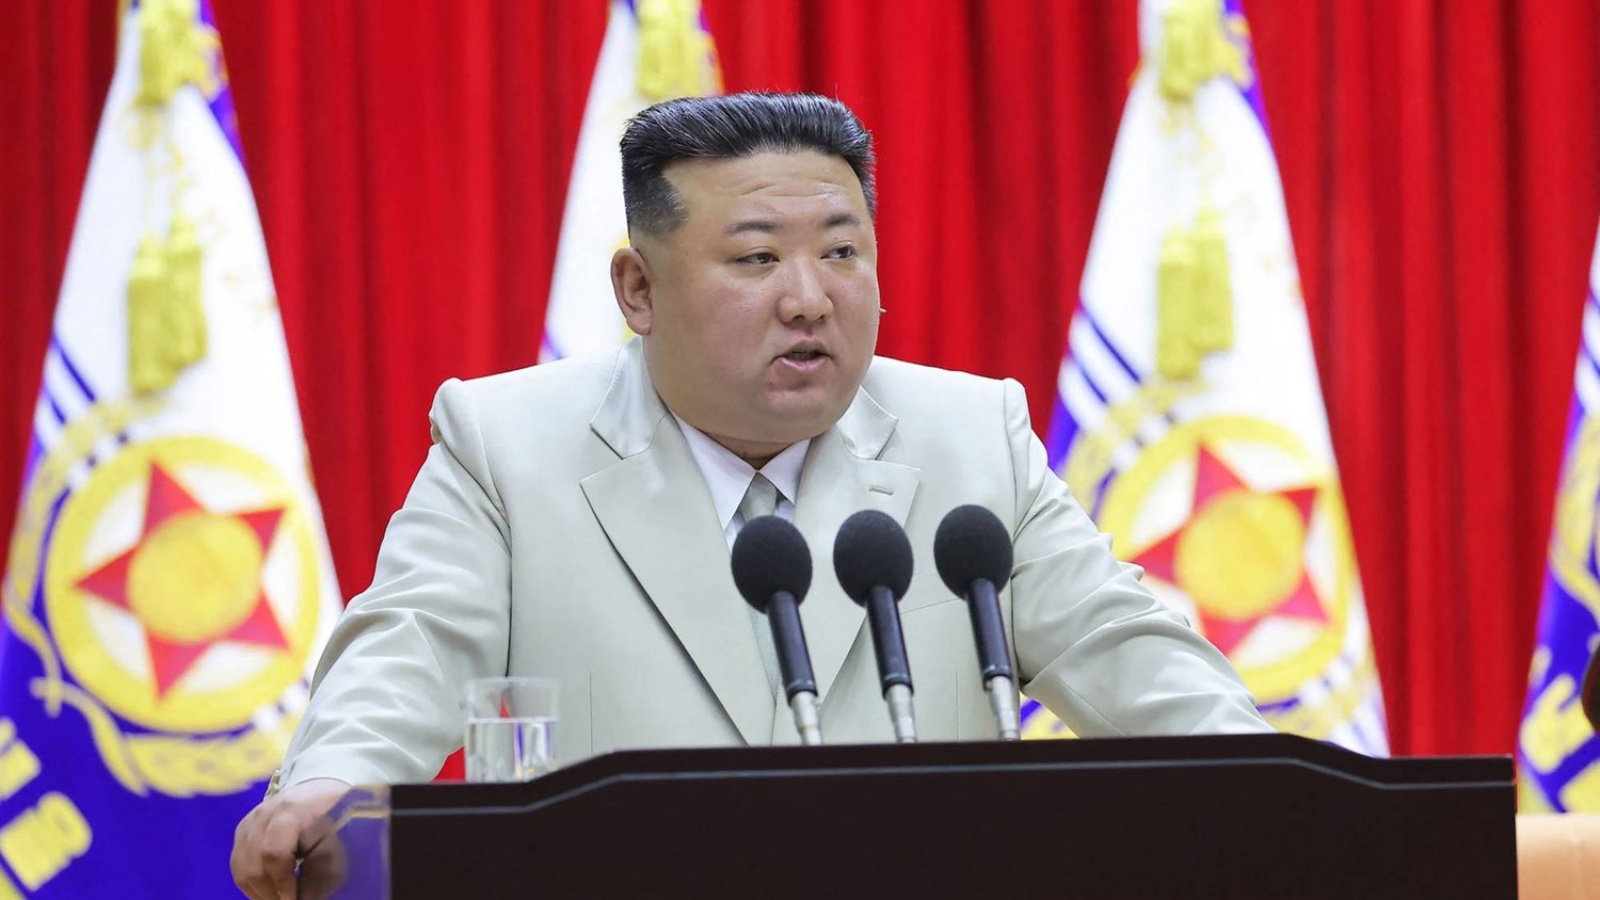 الزعيم الكوري الشمالي كيم جونغ أون يلقي كلمة خلال تفقده قيادة القوات البحرية الأحد الماضي